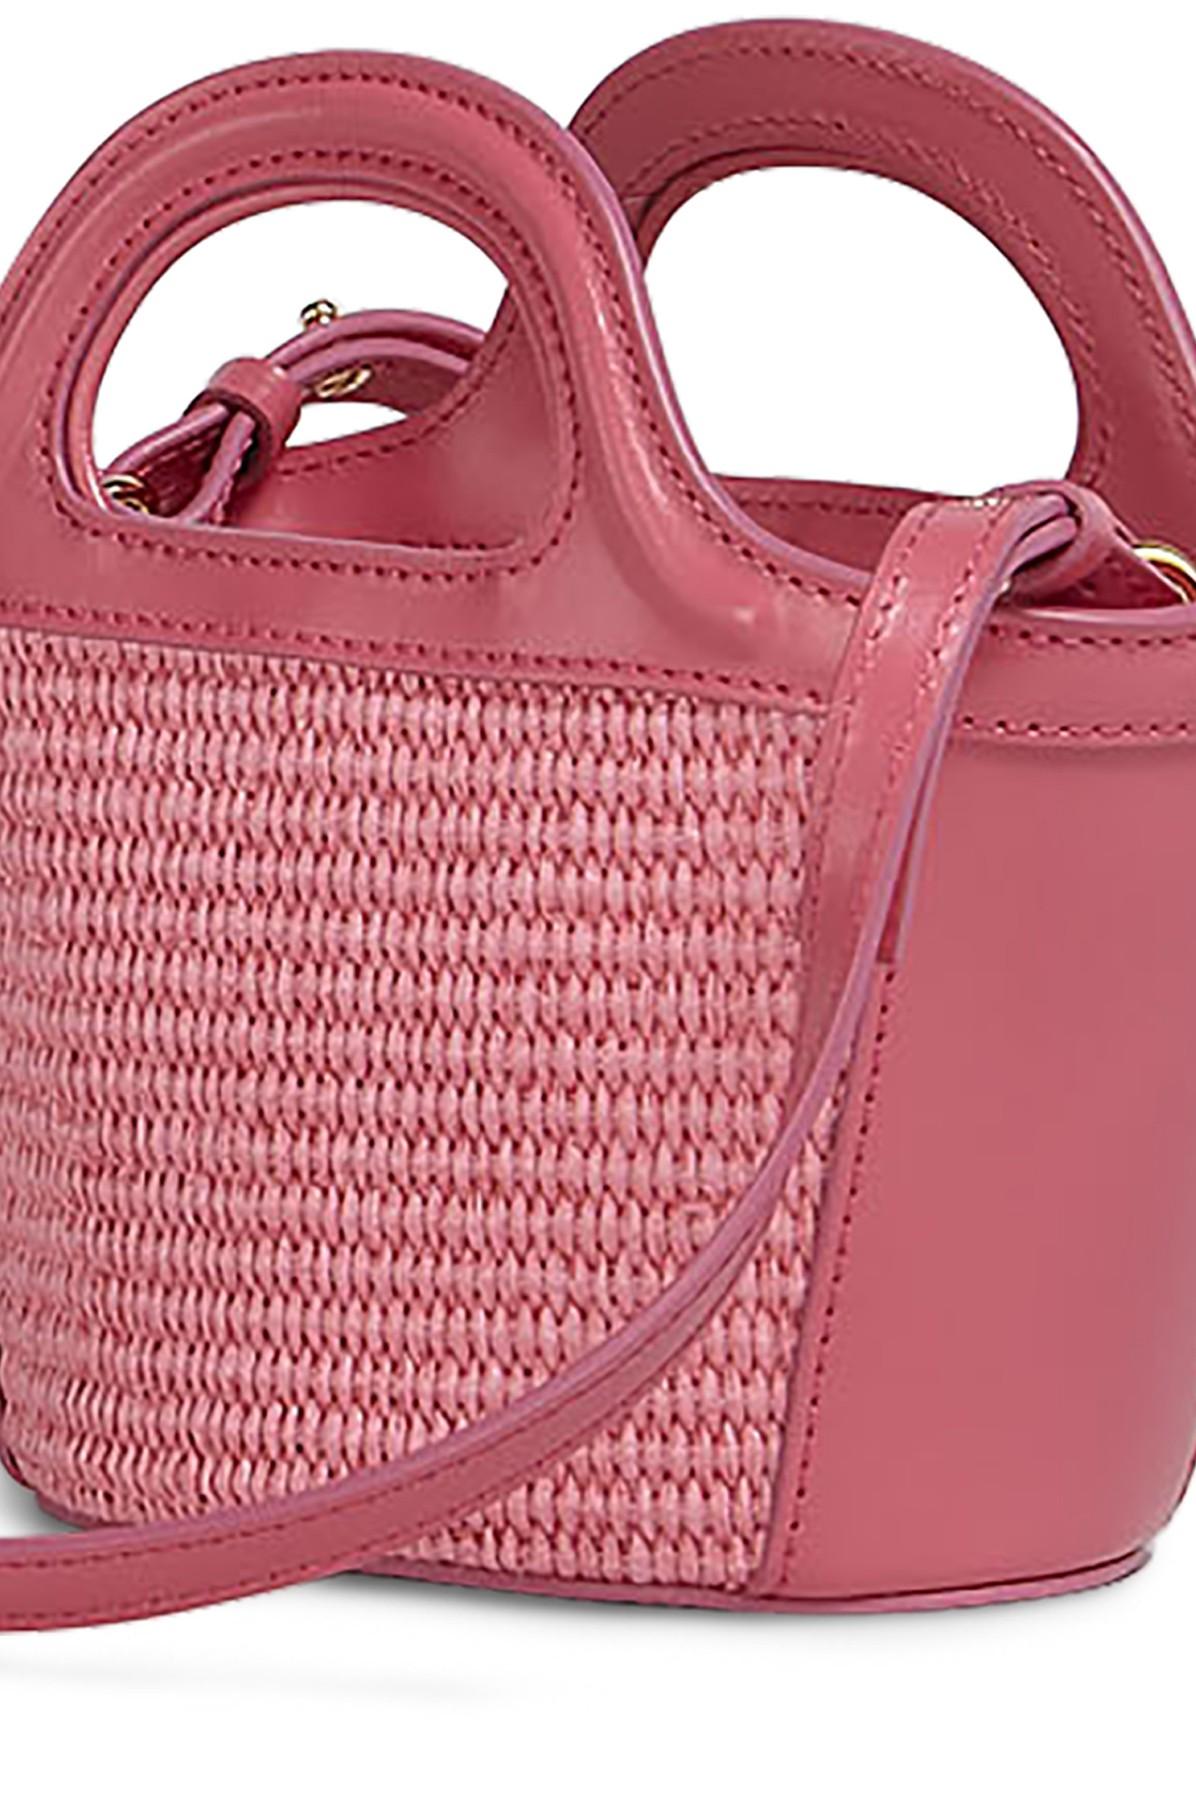 Marni Tropicalia Raffia And Leather Mini Basket Bag in 